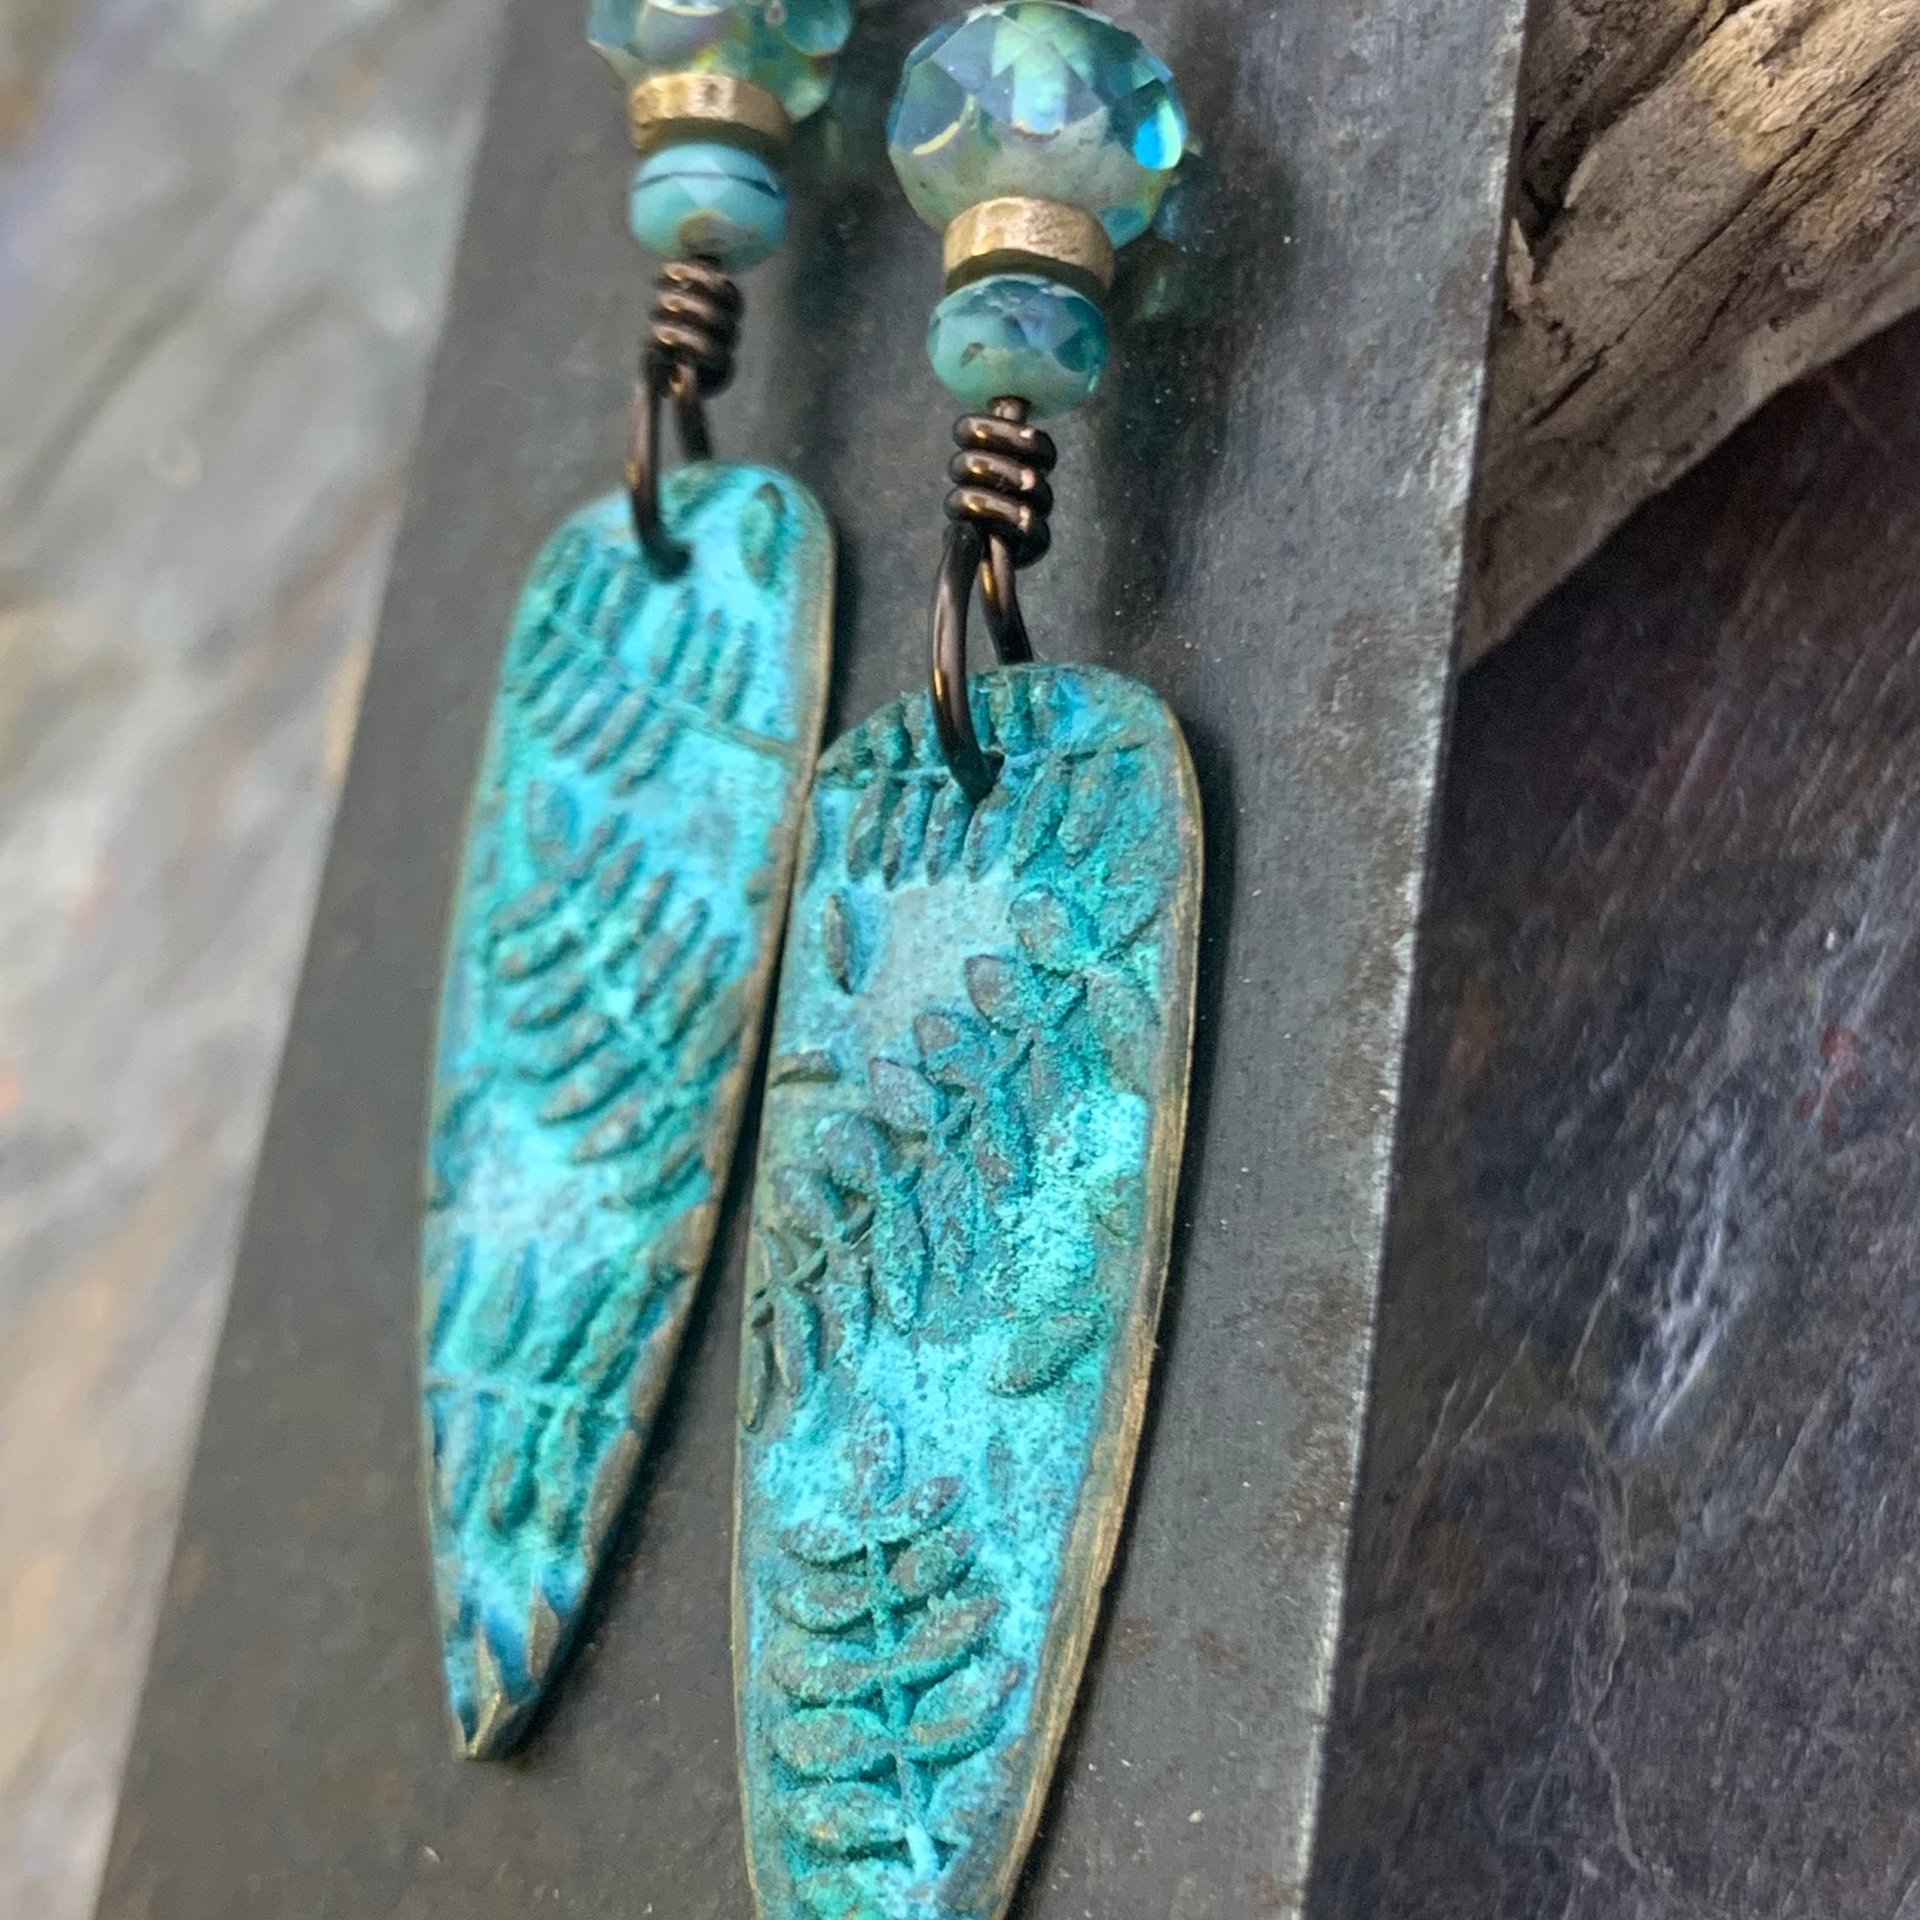 Bronze Fern Earrings, Verdigris Patina, Teardrop Dangle, Czech Glass Beads, Boho Hippie Style, Shield Earrings, Earthy, Soul Harbor Jewelry